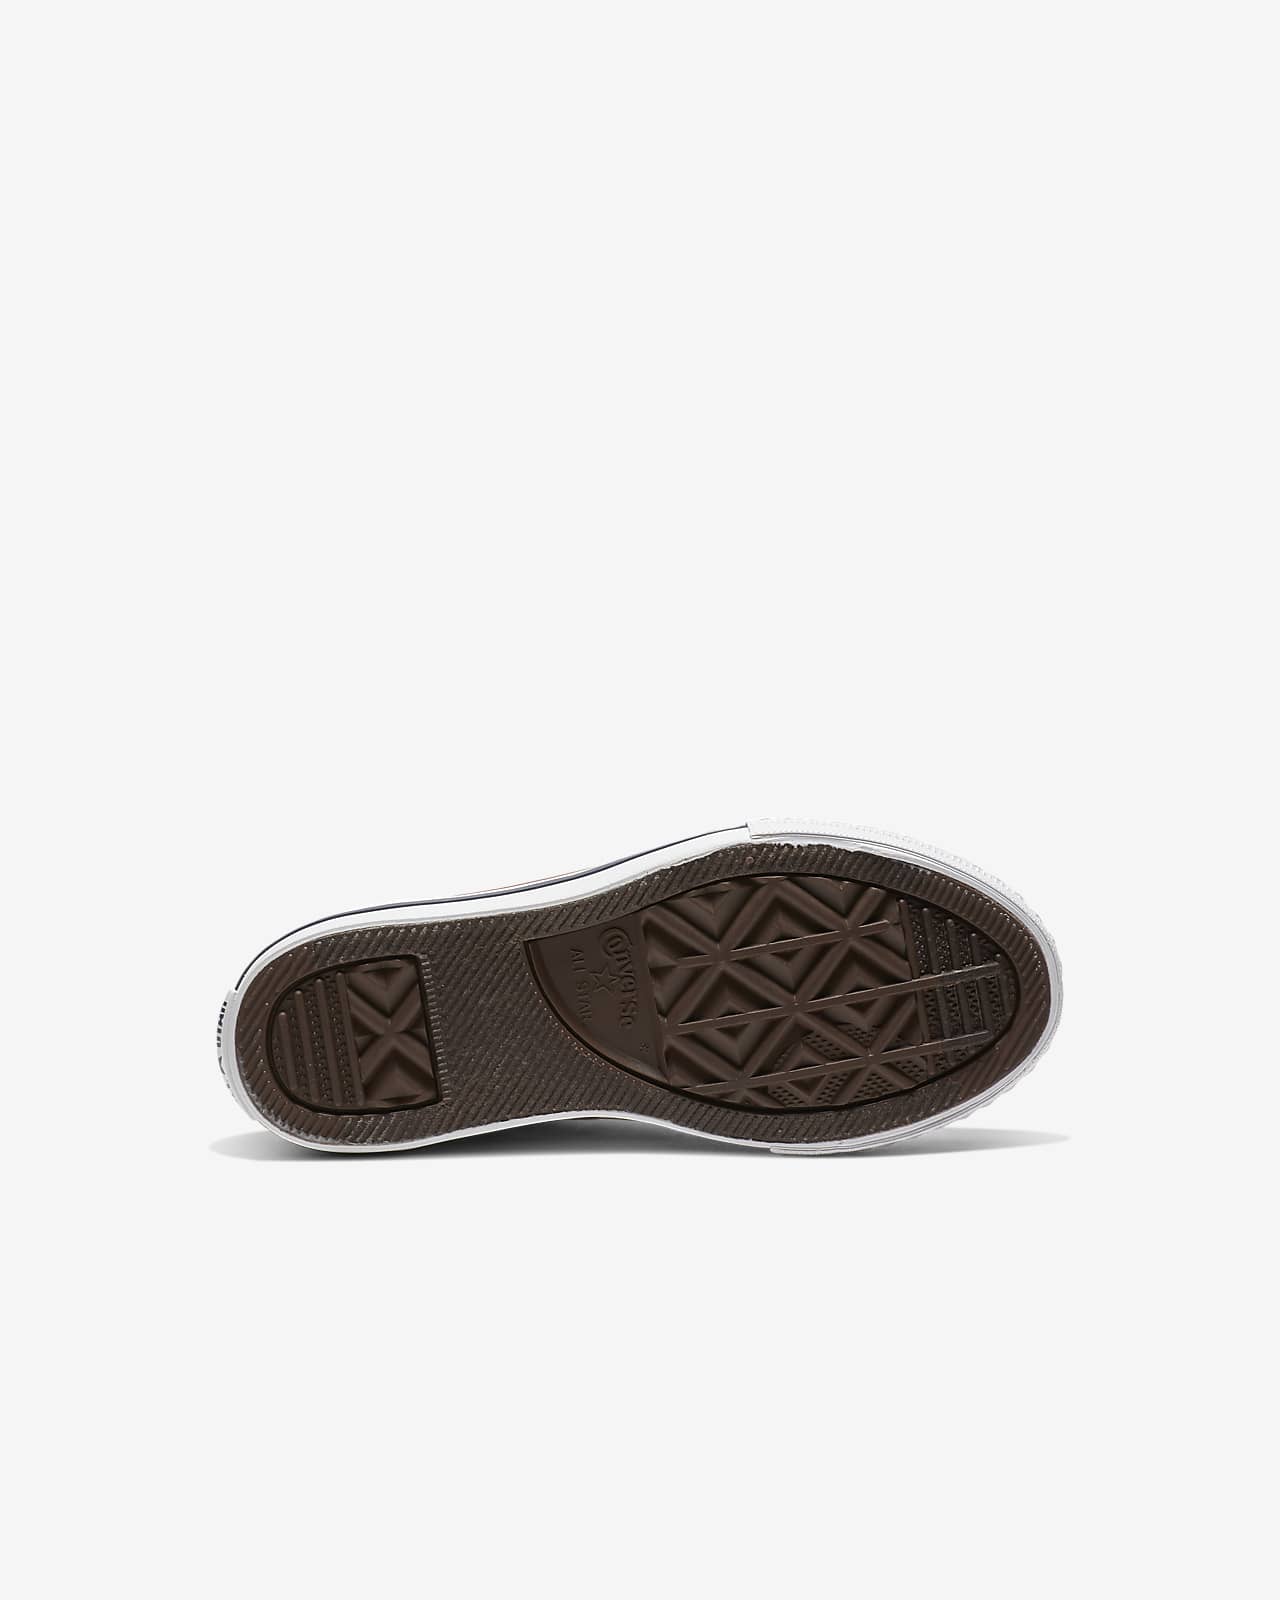 Calzado para niños de talla pequeña Converse Chuck Taylor All de perfil bajo (16,5-3Y). Nike.com